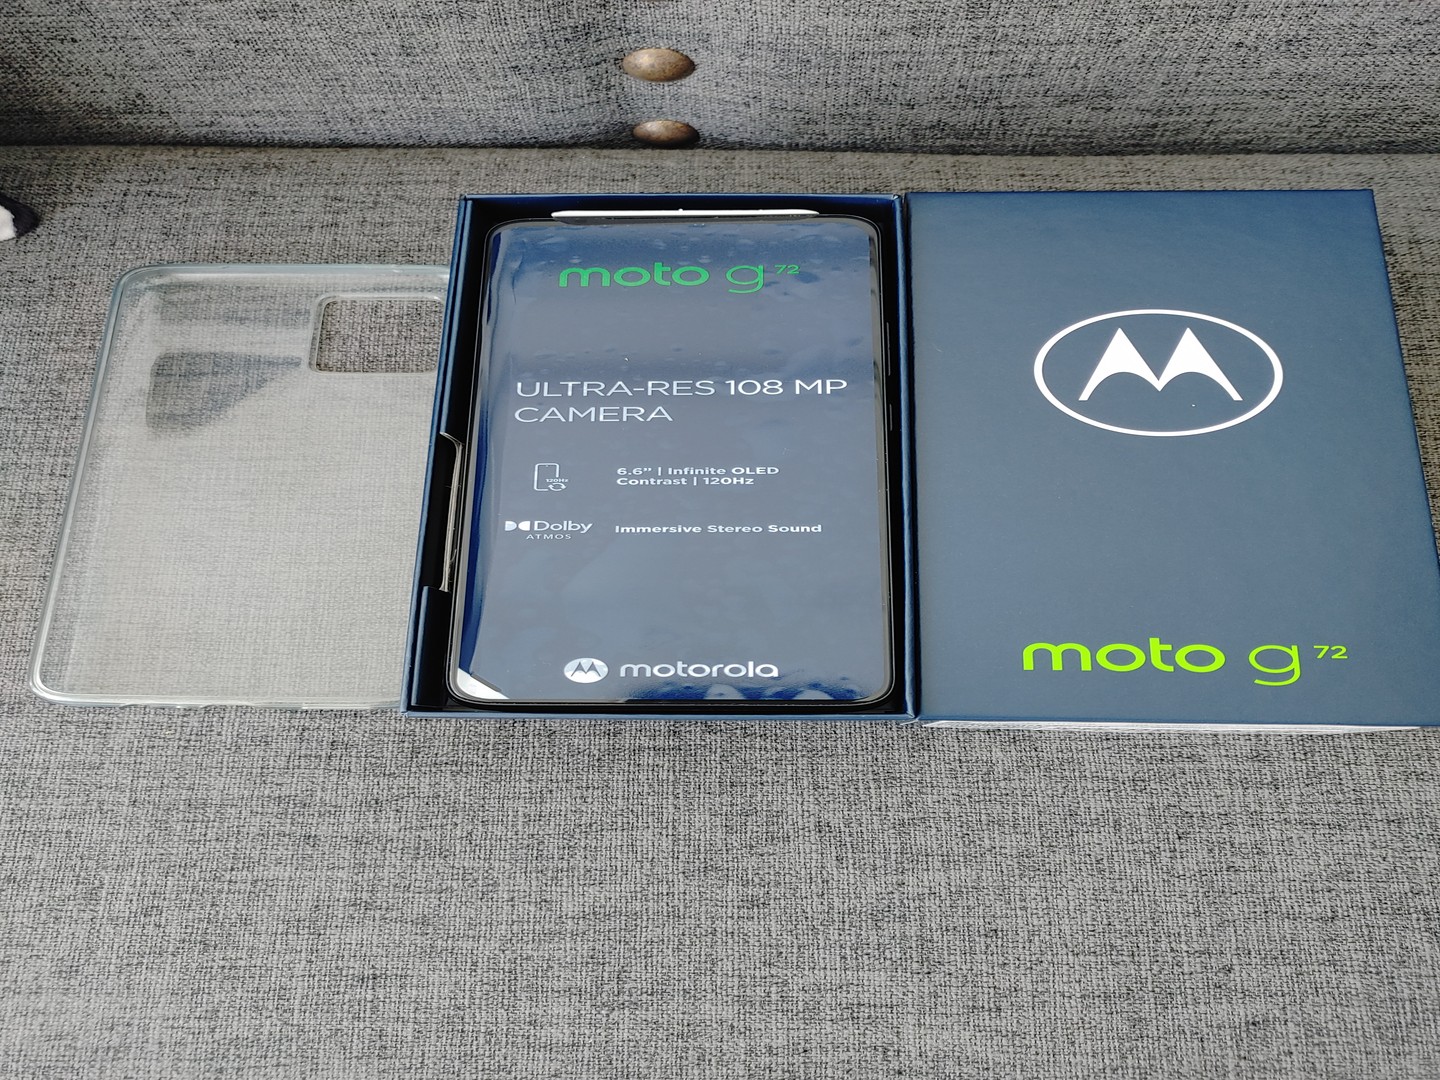 celulares y tabletas - Motorola G72 nuevo en su caja de claro 0